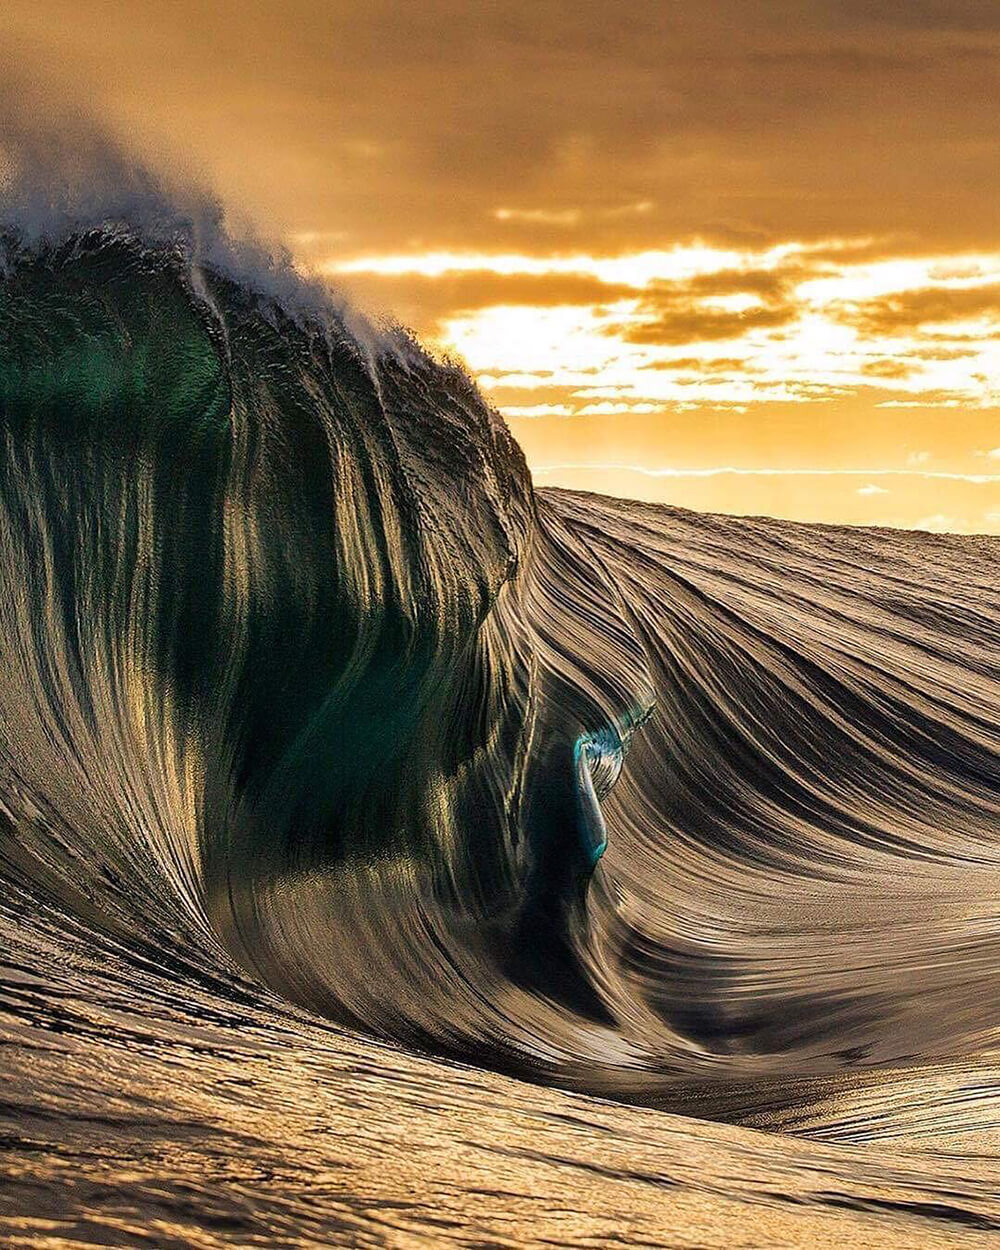 Image of ocean wave by @anjsemark